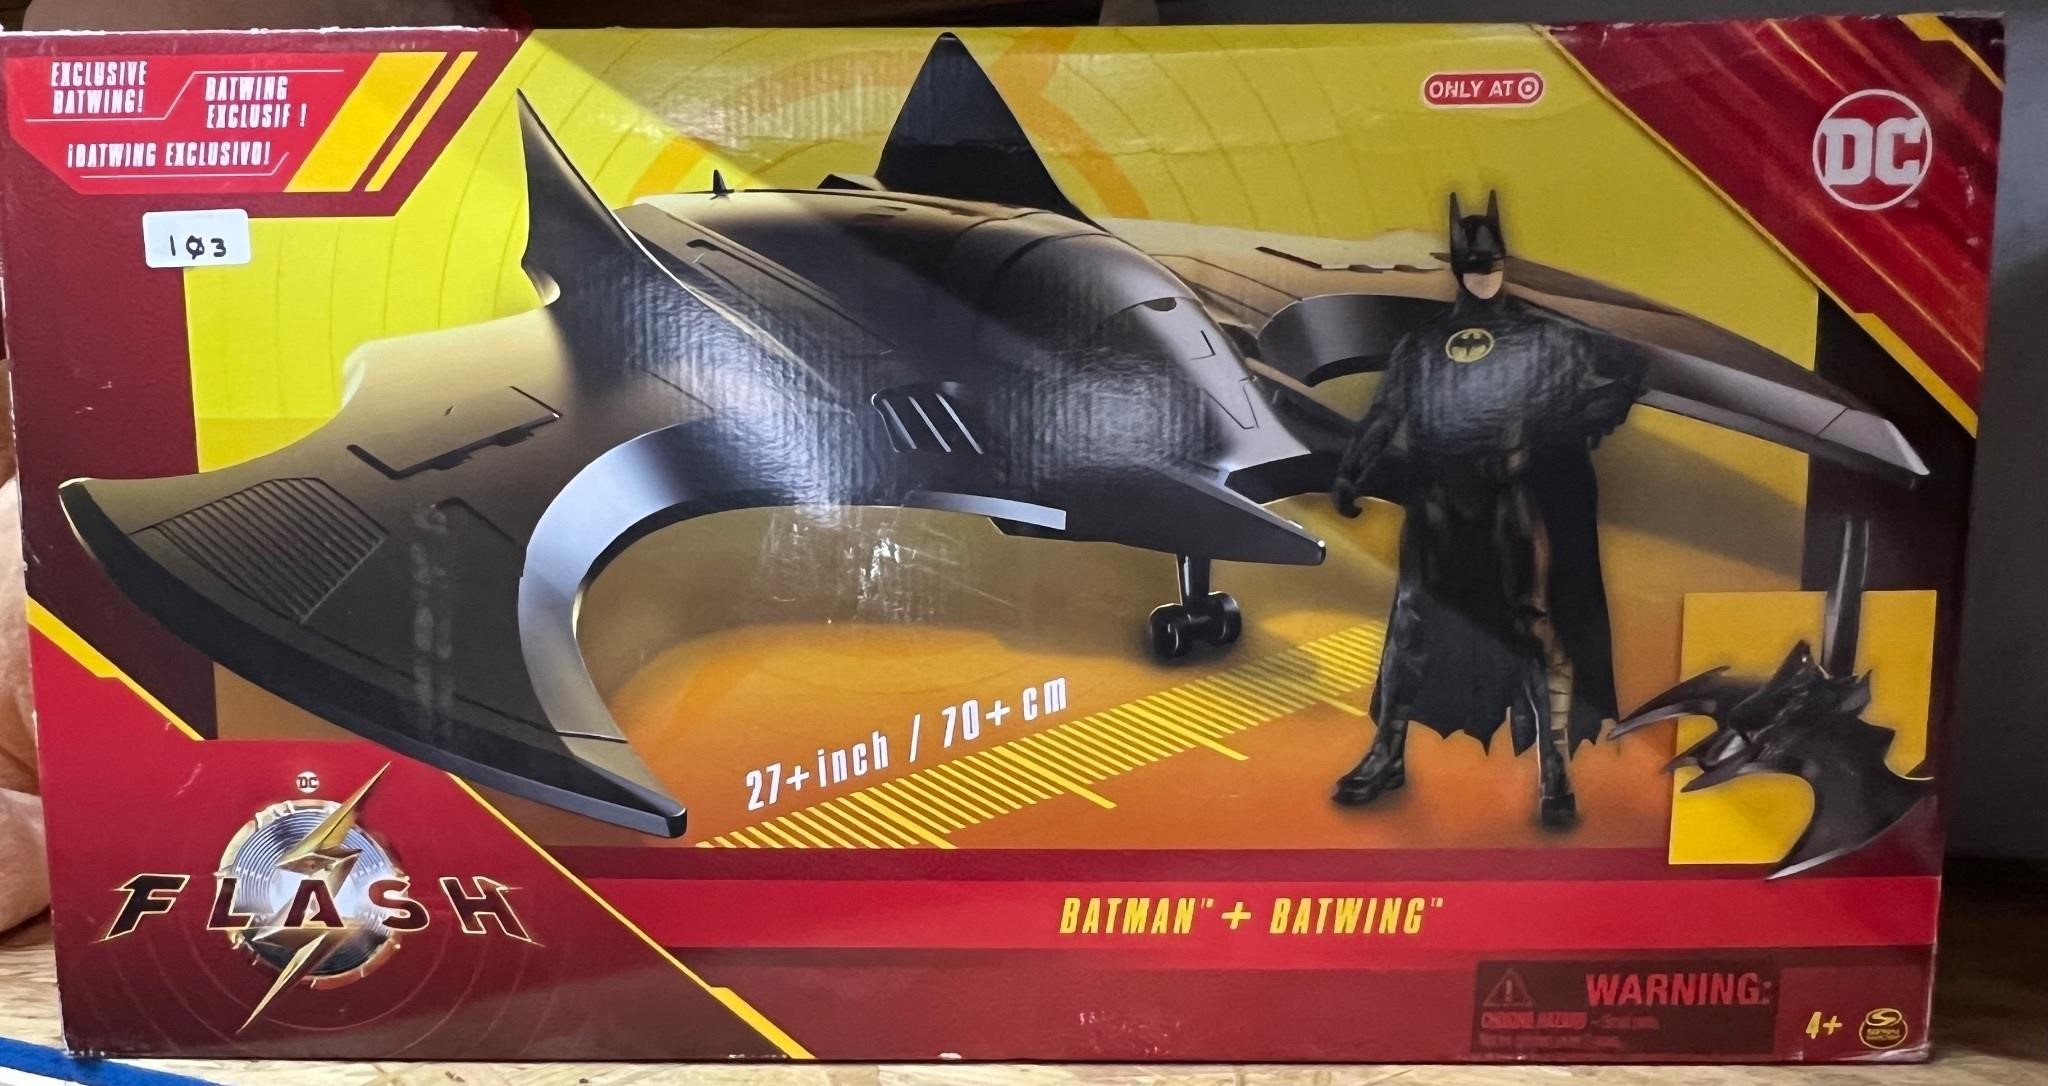 DC Batman + Batwing Action Figure Toy